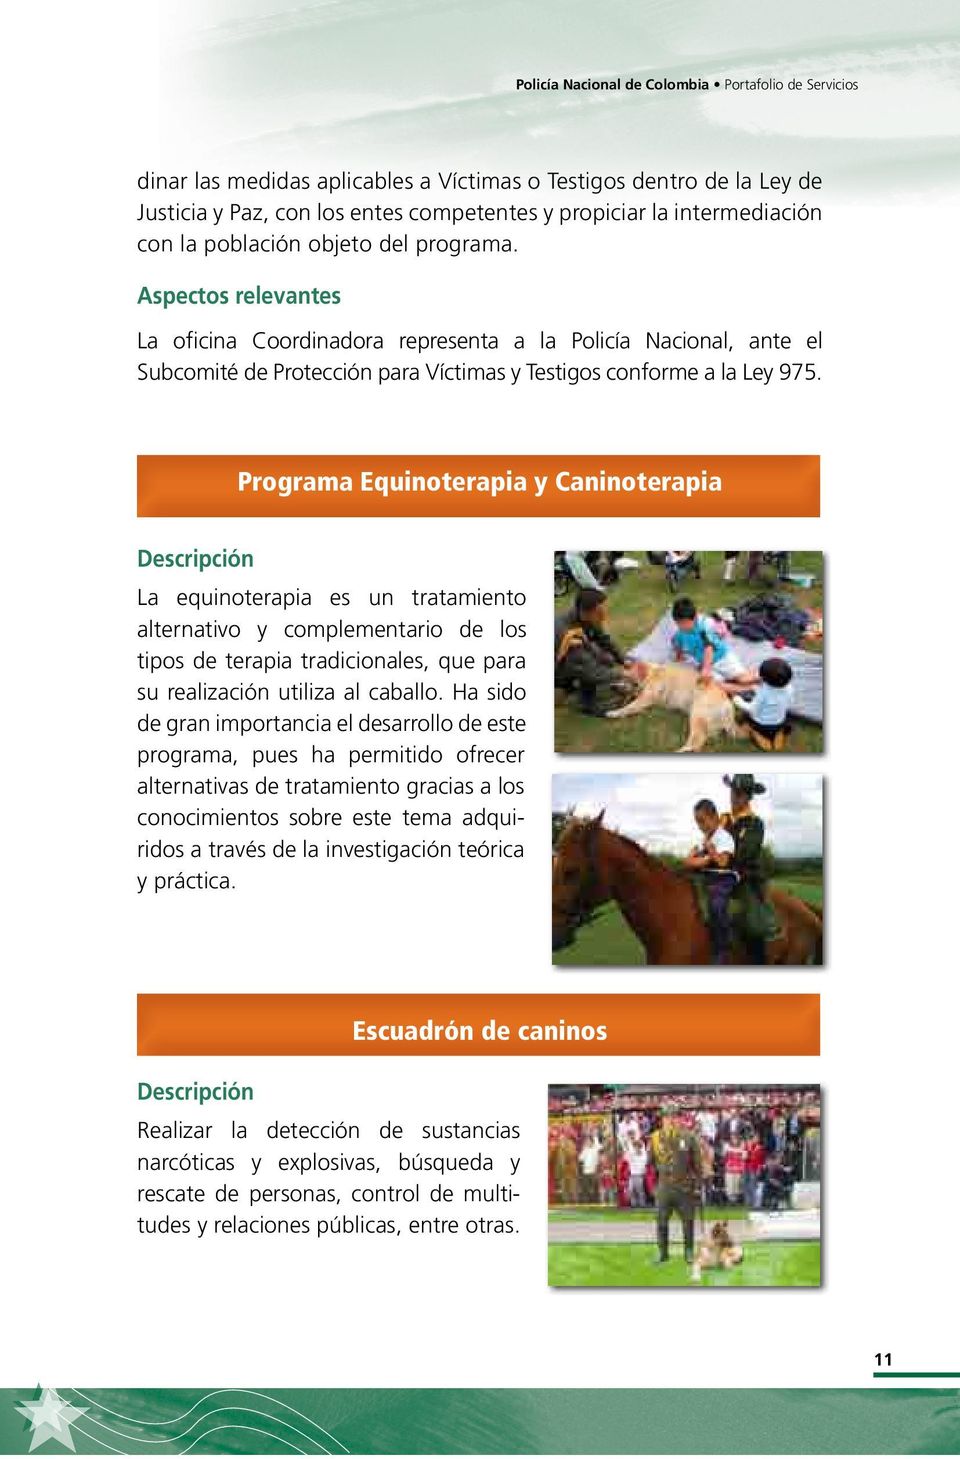 Programa Equinoterapia y Caninoterapia La equinoterapia es un tratamiento alternativo y complementario de los tipos de terapia tradicionales, que para su realización utiliza al caballo.